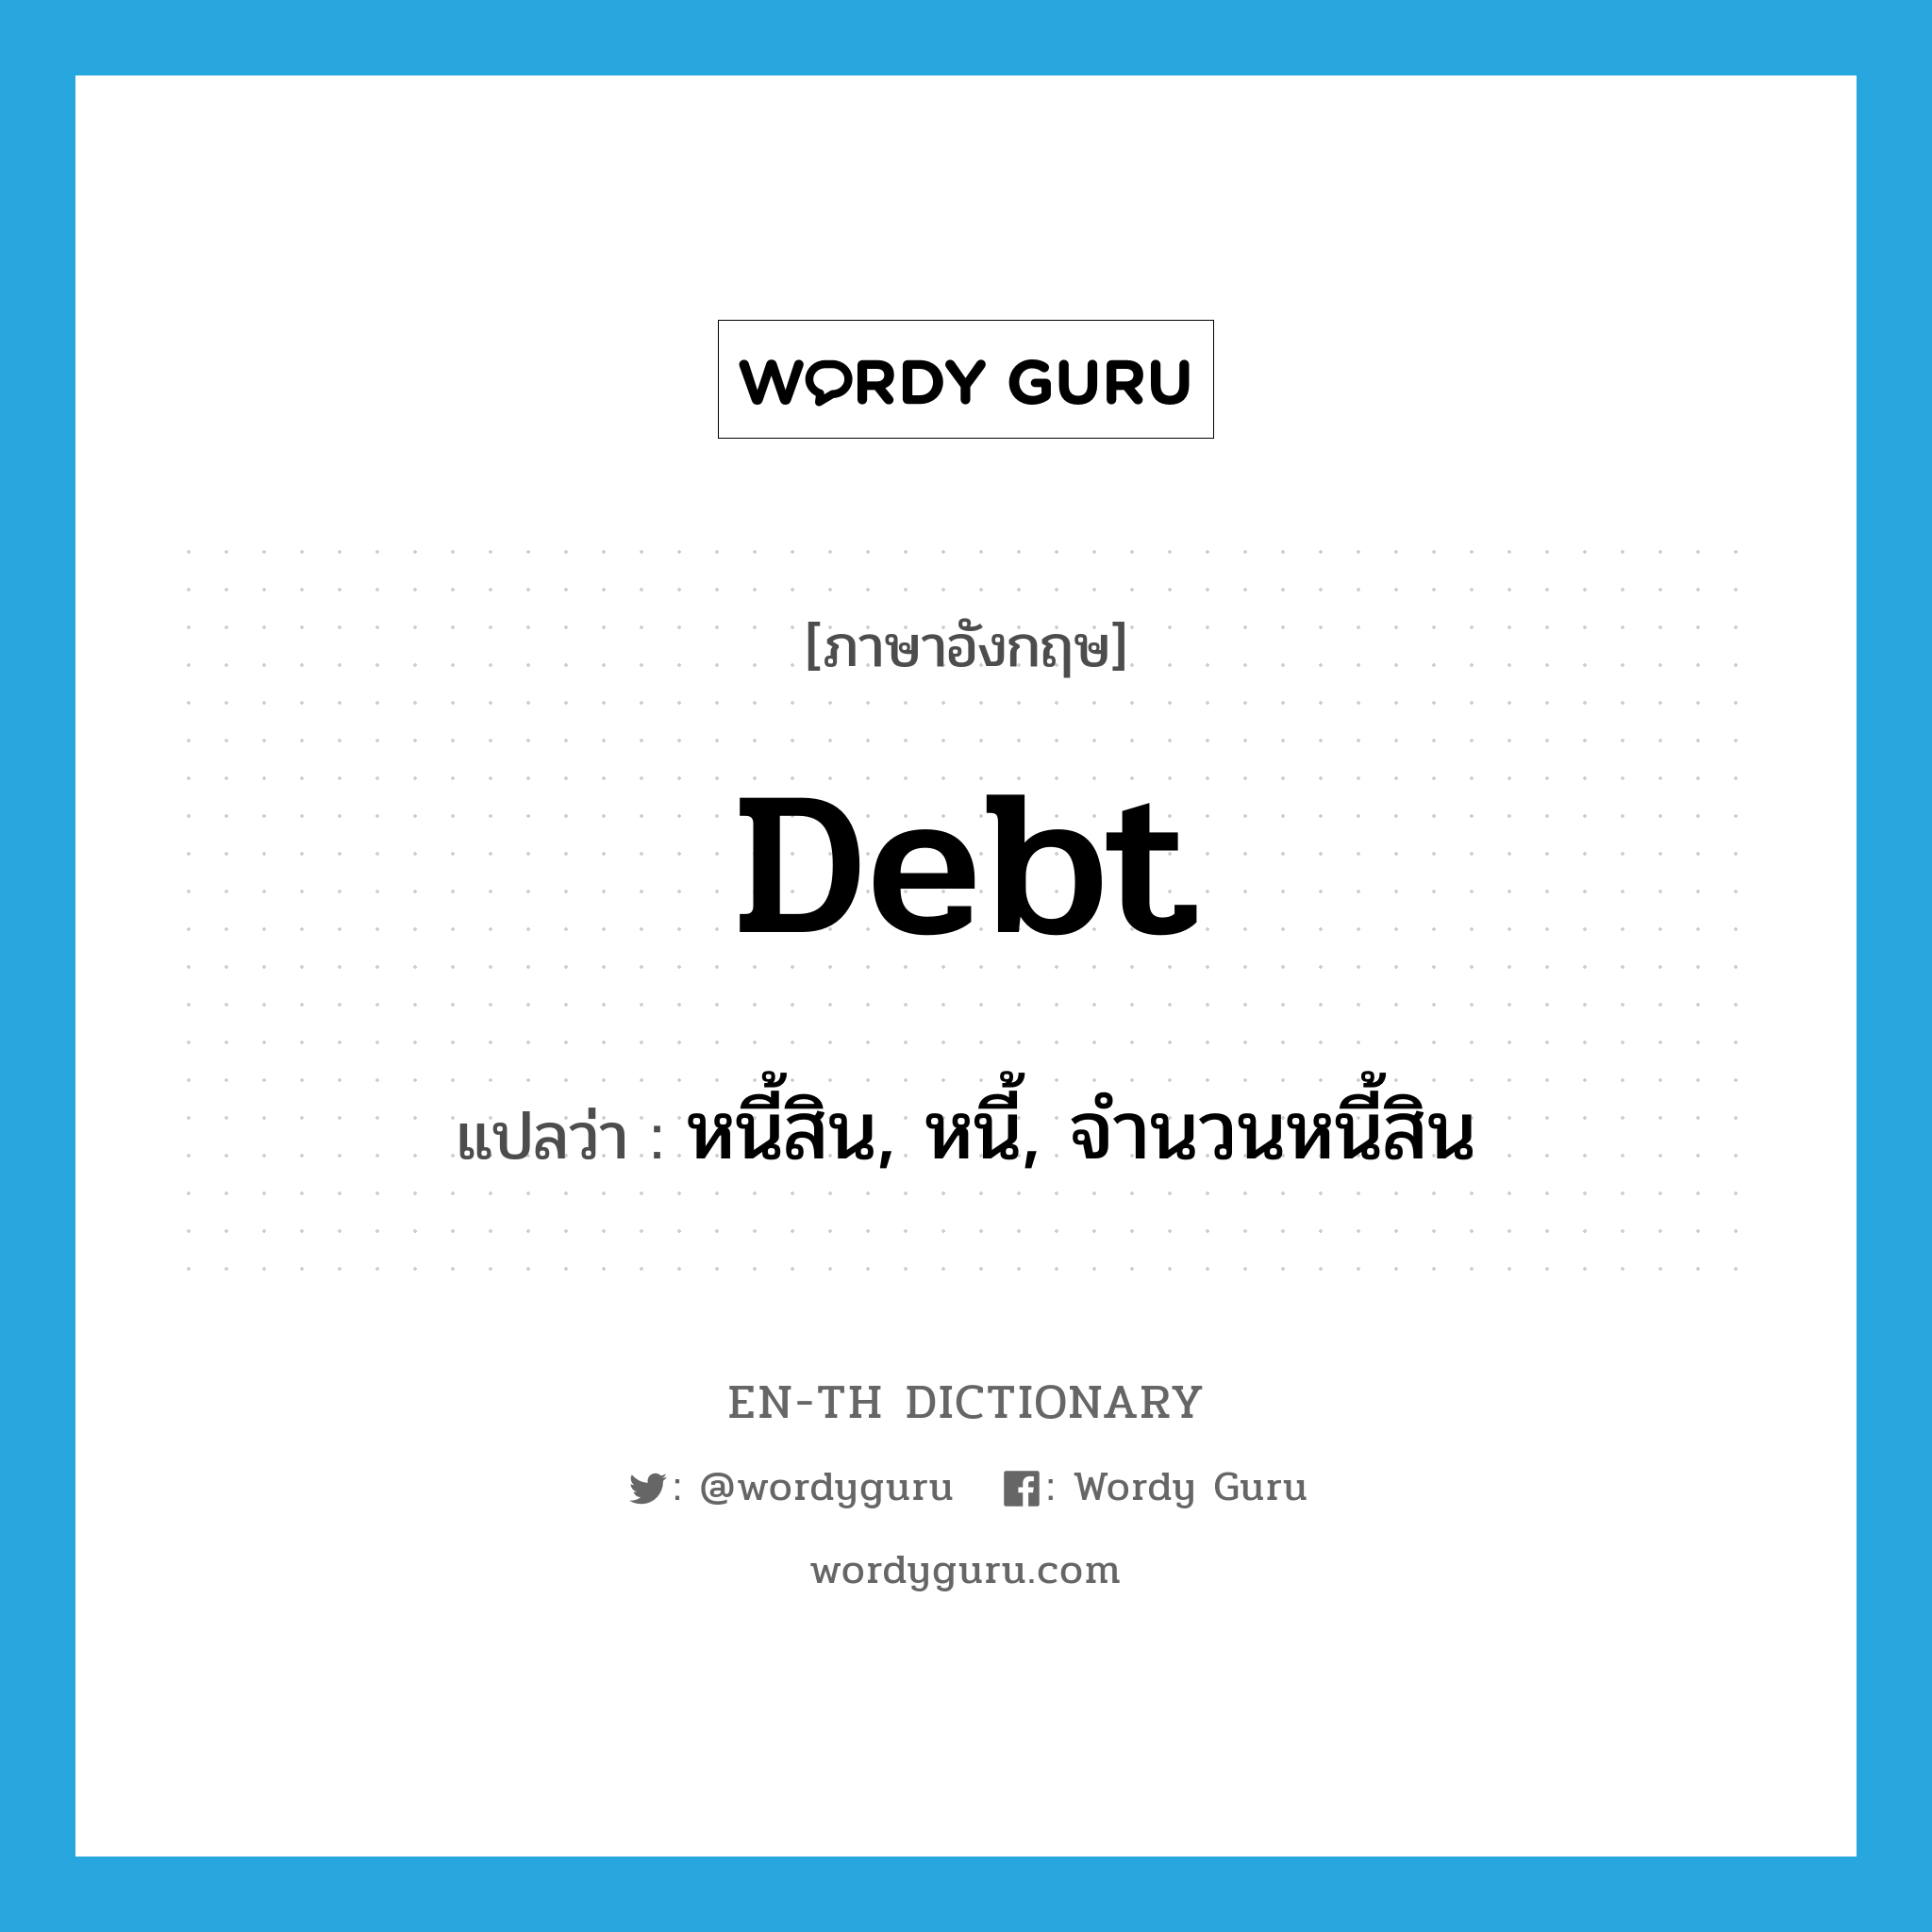 debt แปลว่า?, คำศัพท์ภาษาอังกฤษ debt แปลว่า หนี้สิน, หนี้, จำนวนหนี้สิน ประเภท N หมวด N